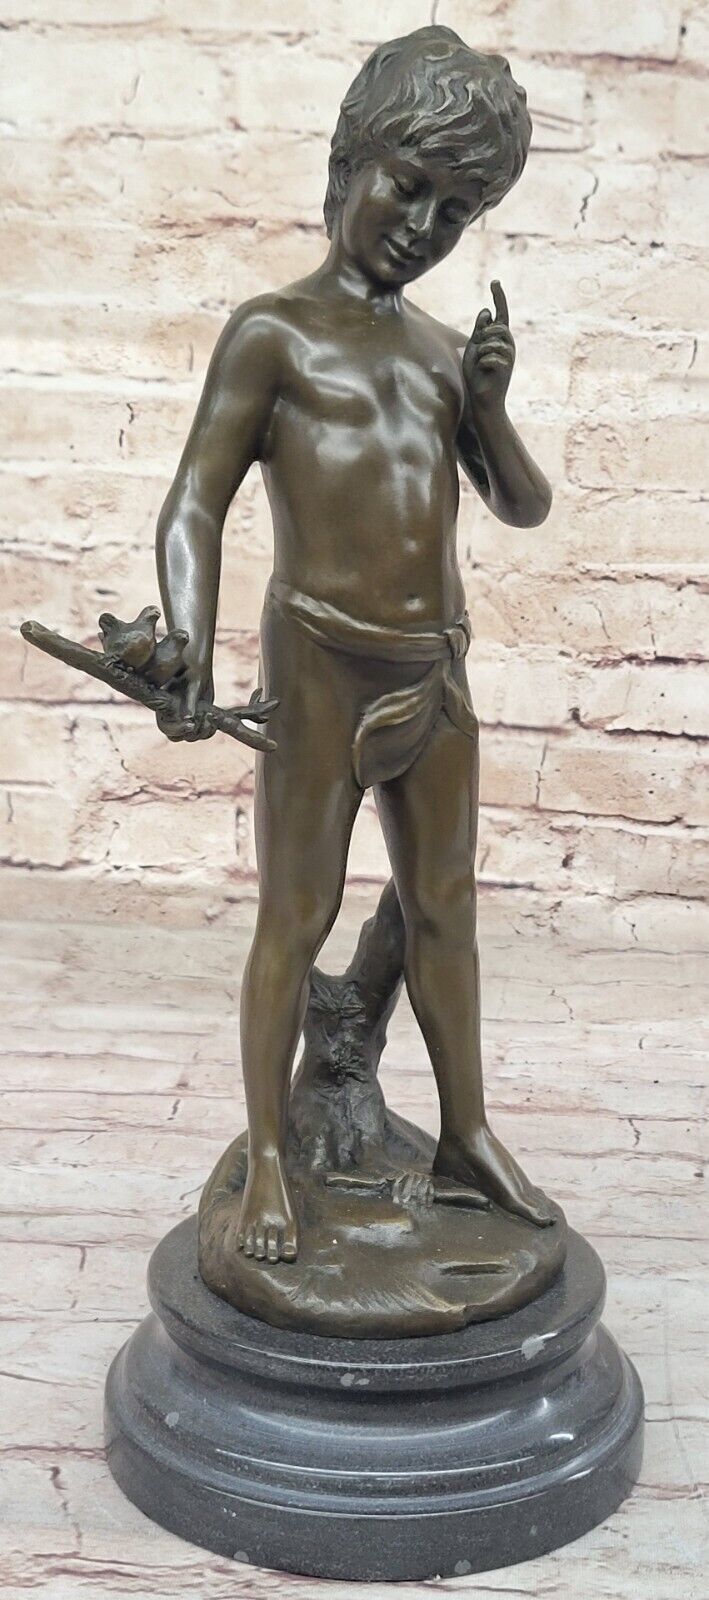 Hot Cast Signed Artwork: Pan Boy with Bird, Handmade Bronze Statue Artwork.